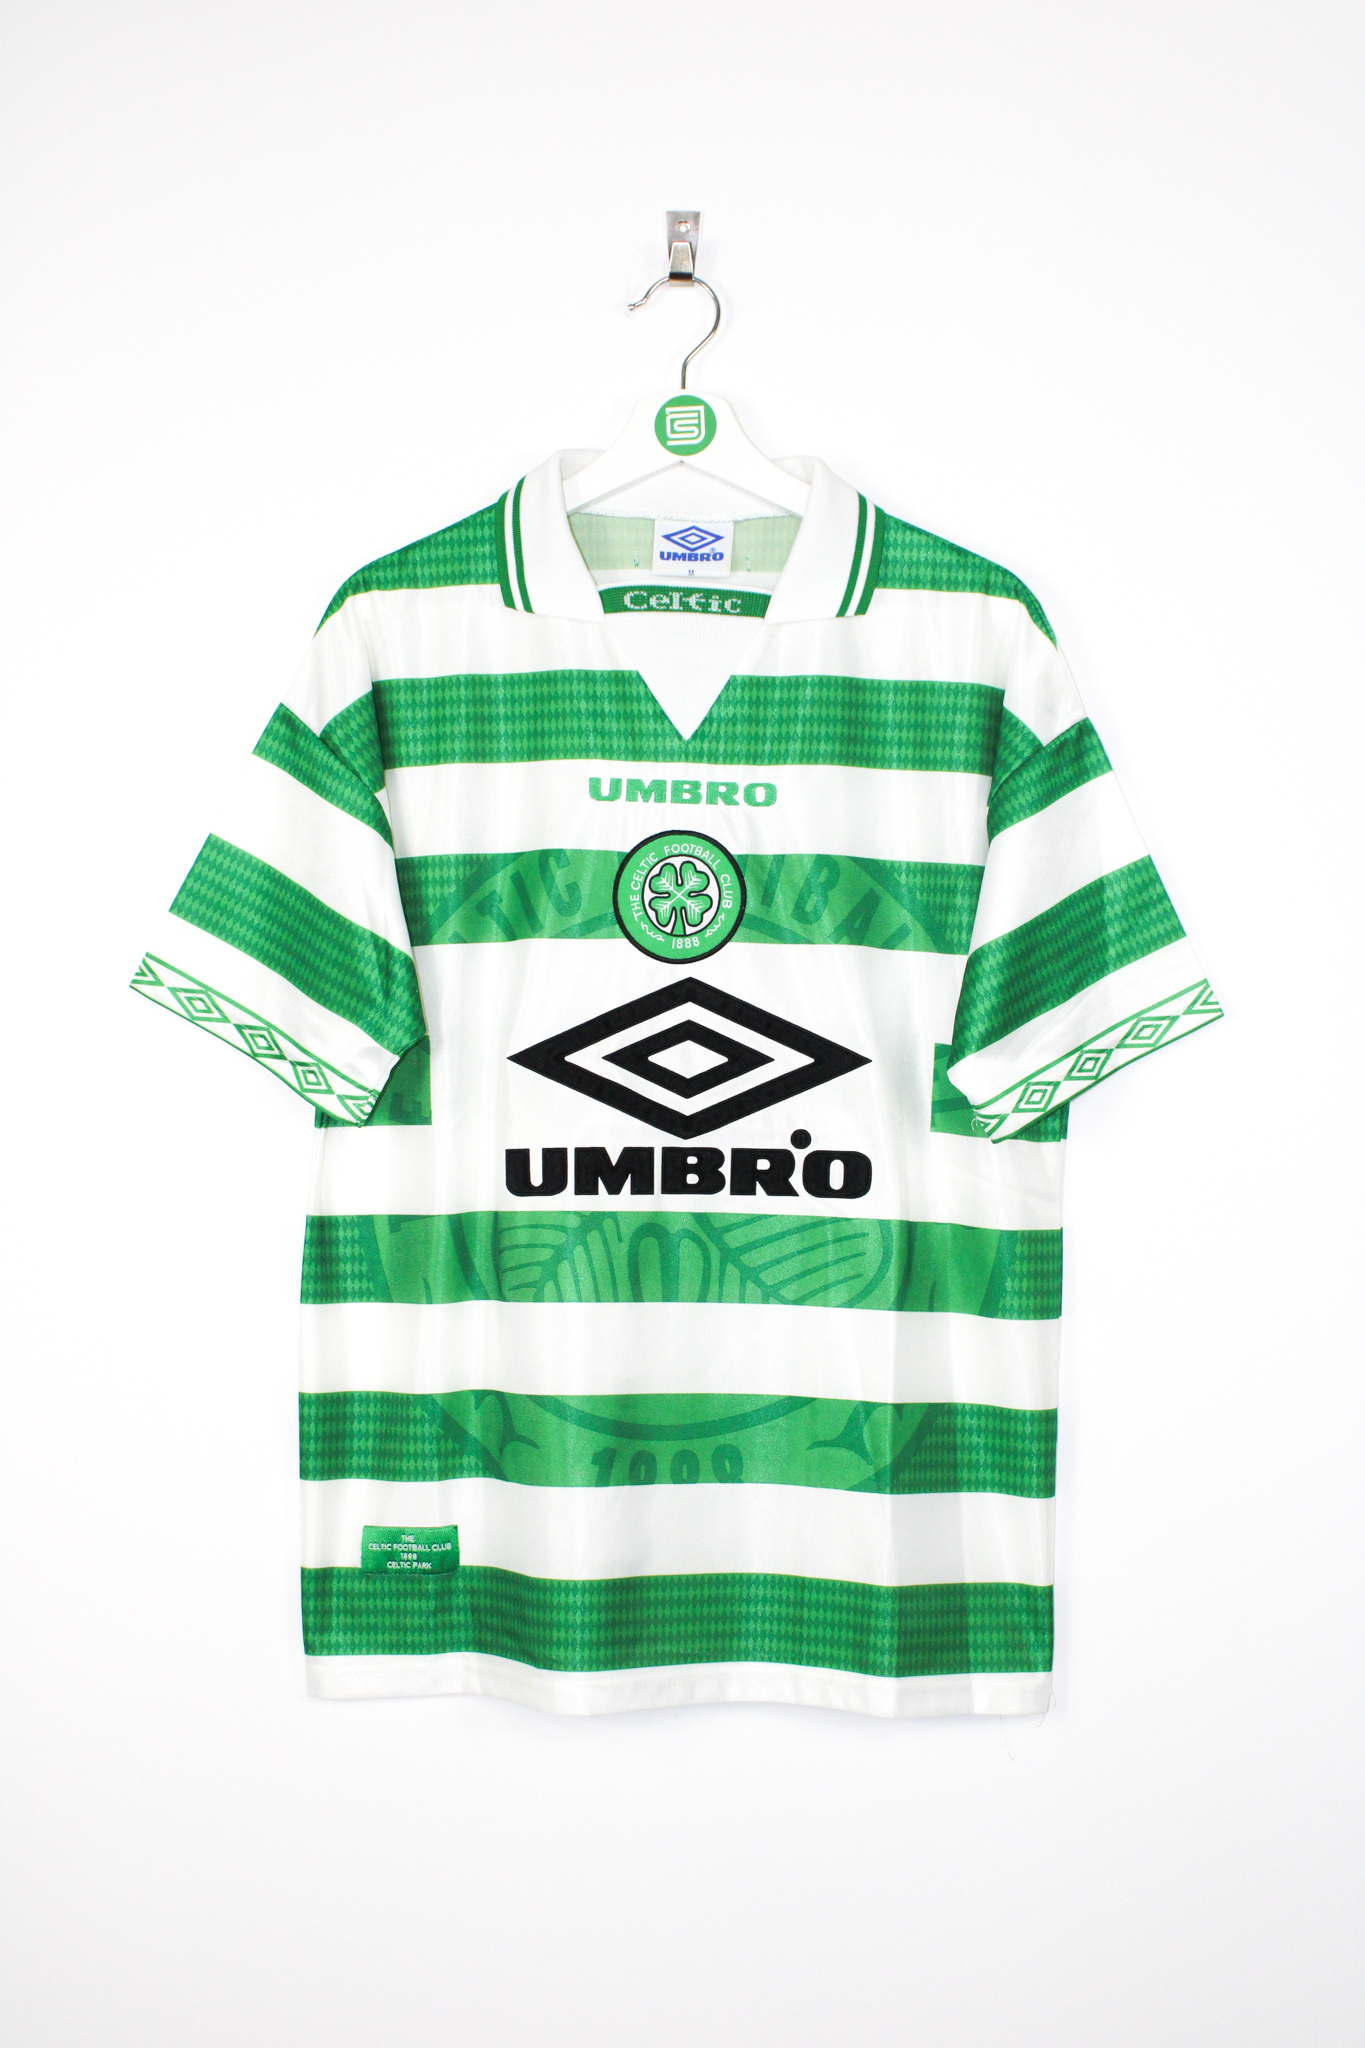 Glasgow Celtic - 1997/1999 Away kit